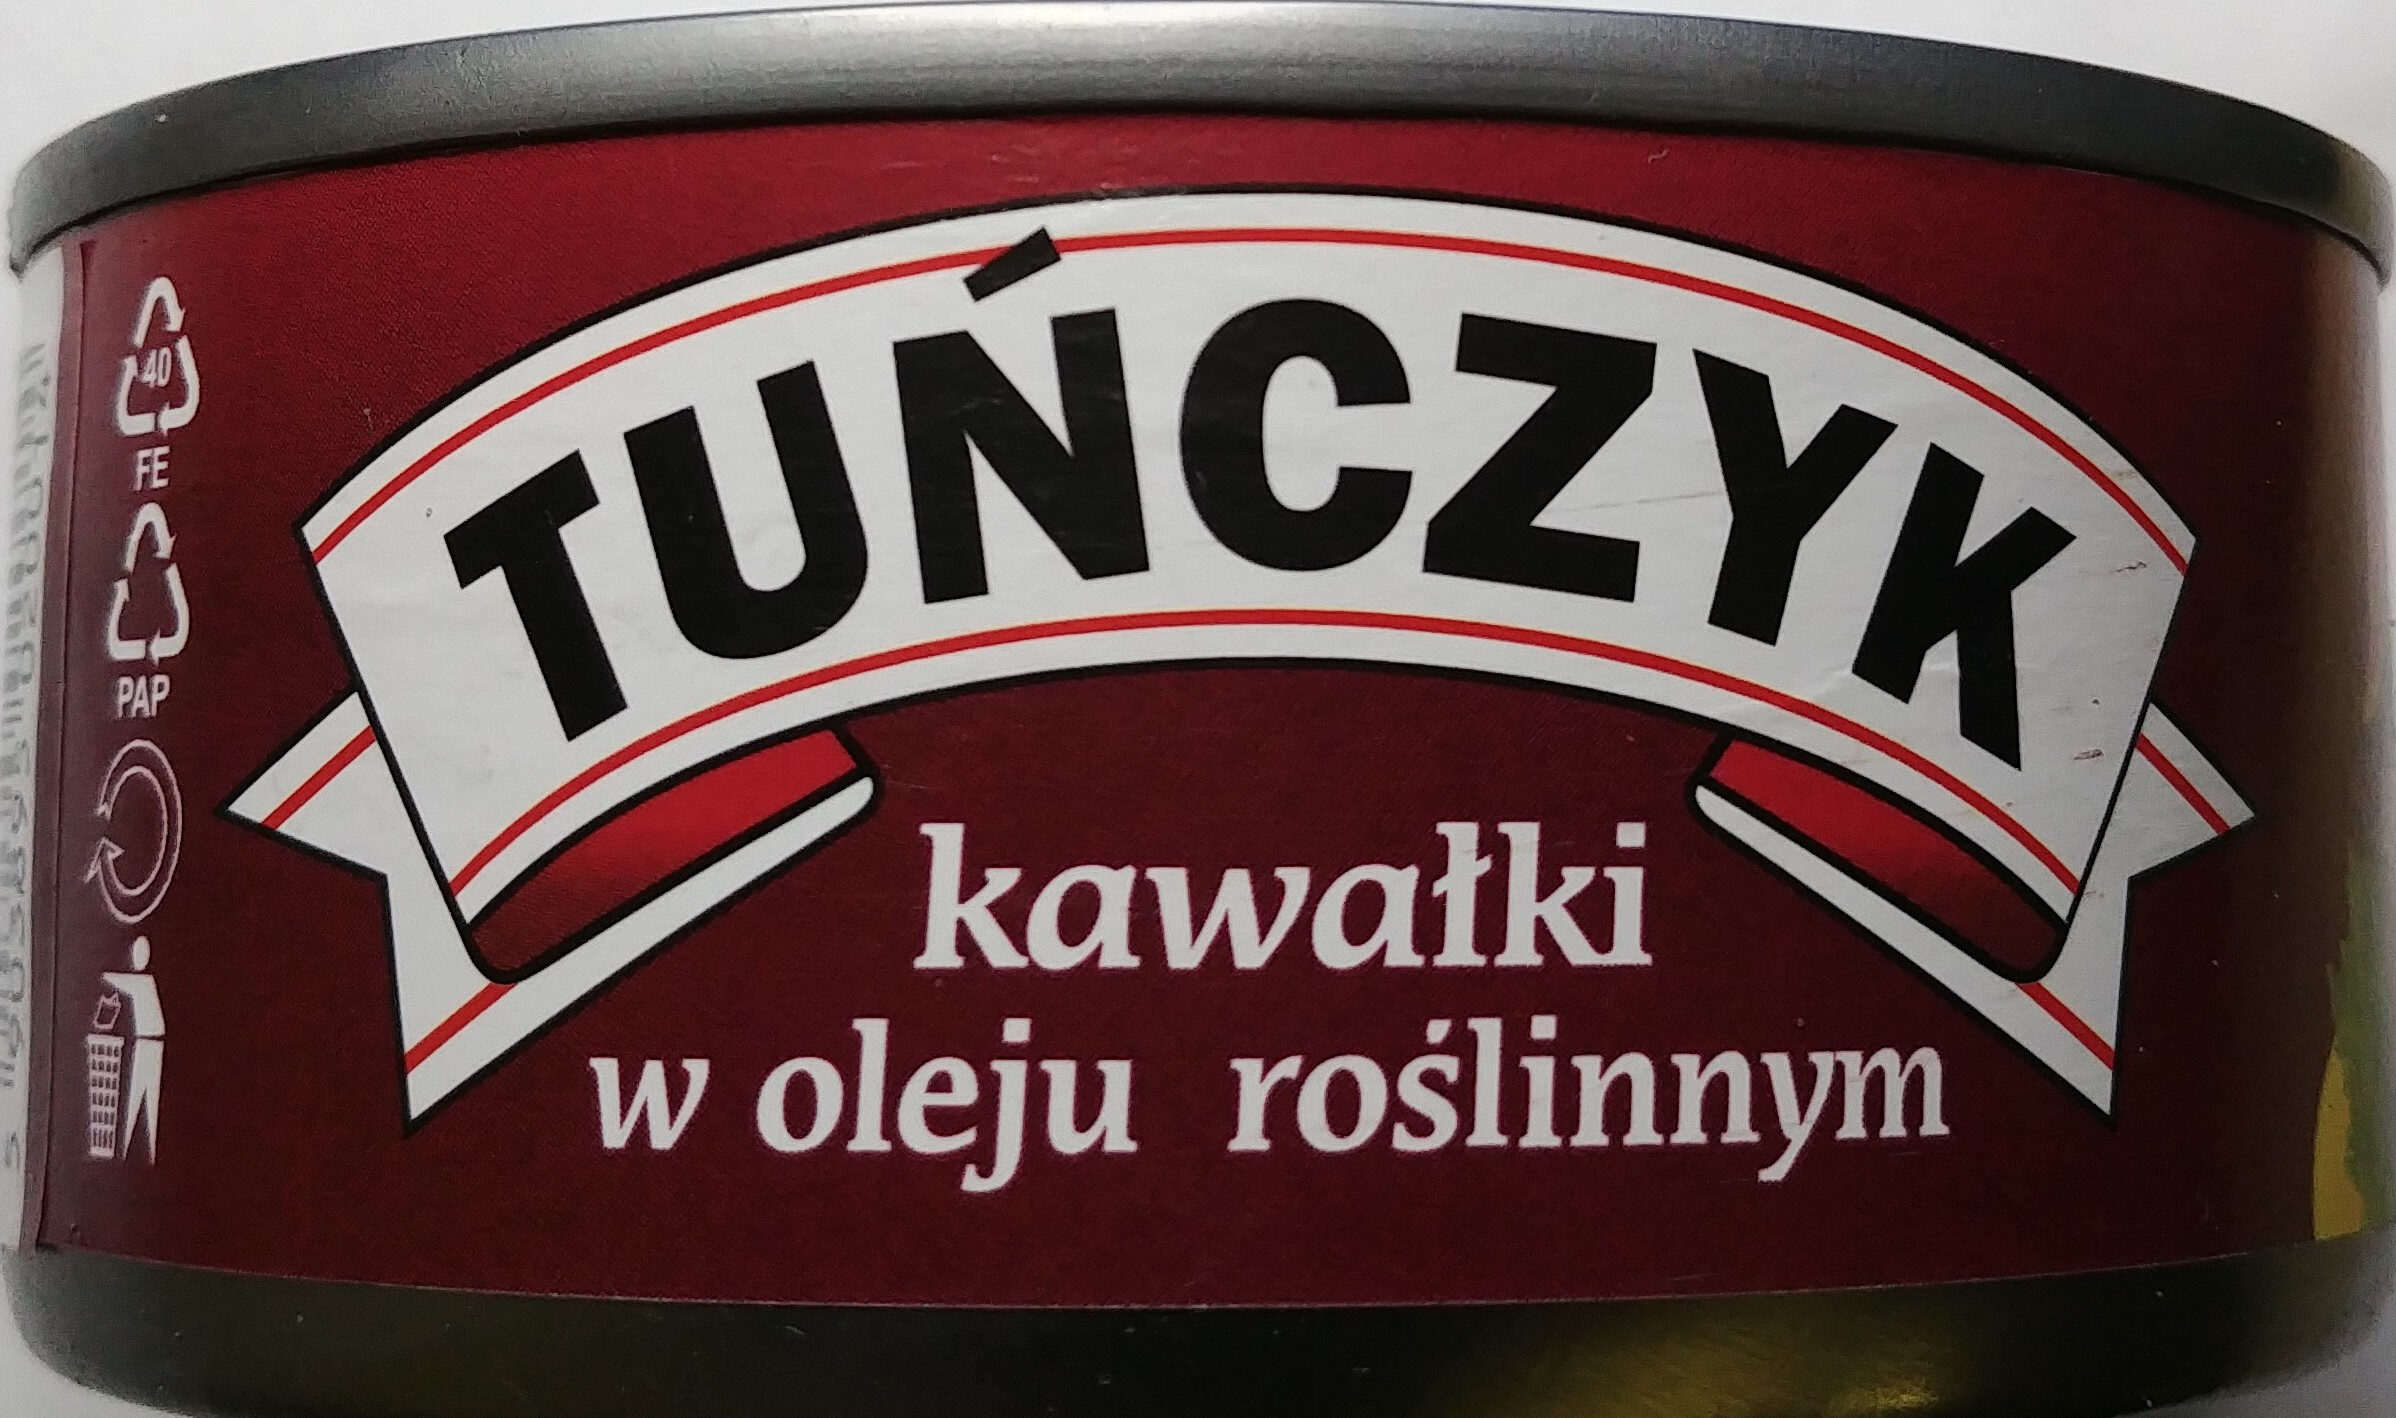 Tuńczyk kawałki w oleju roślinnym. - Producto - pl